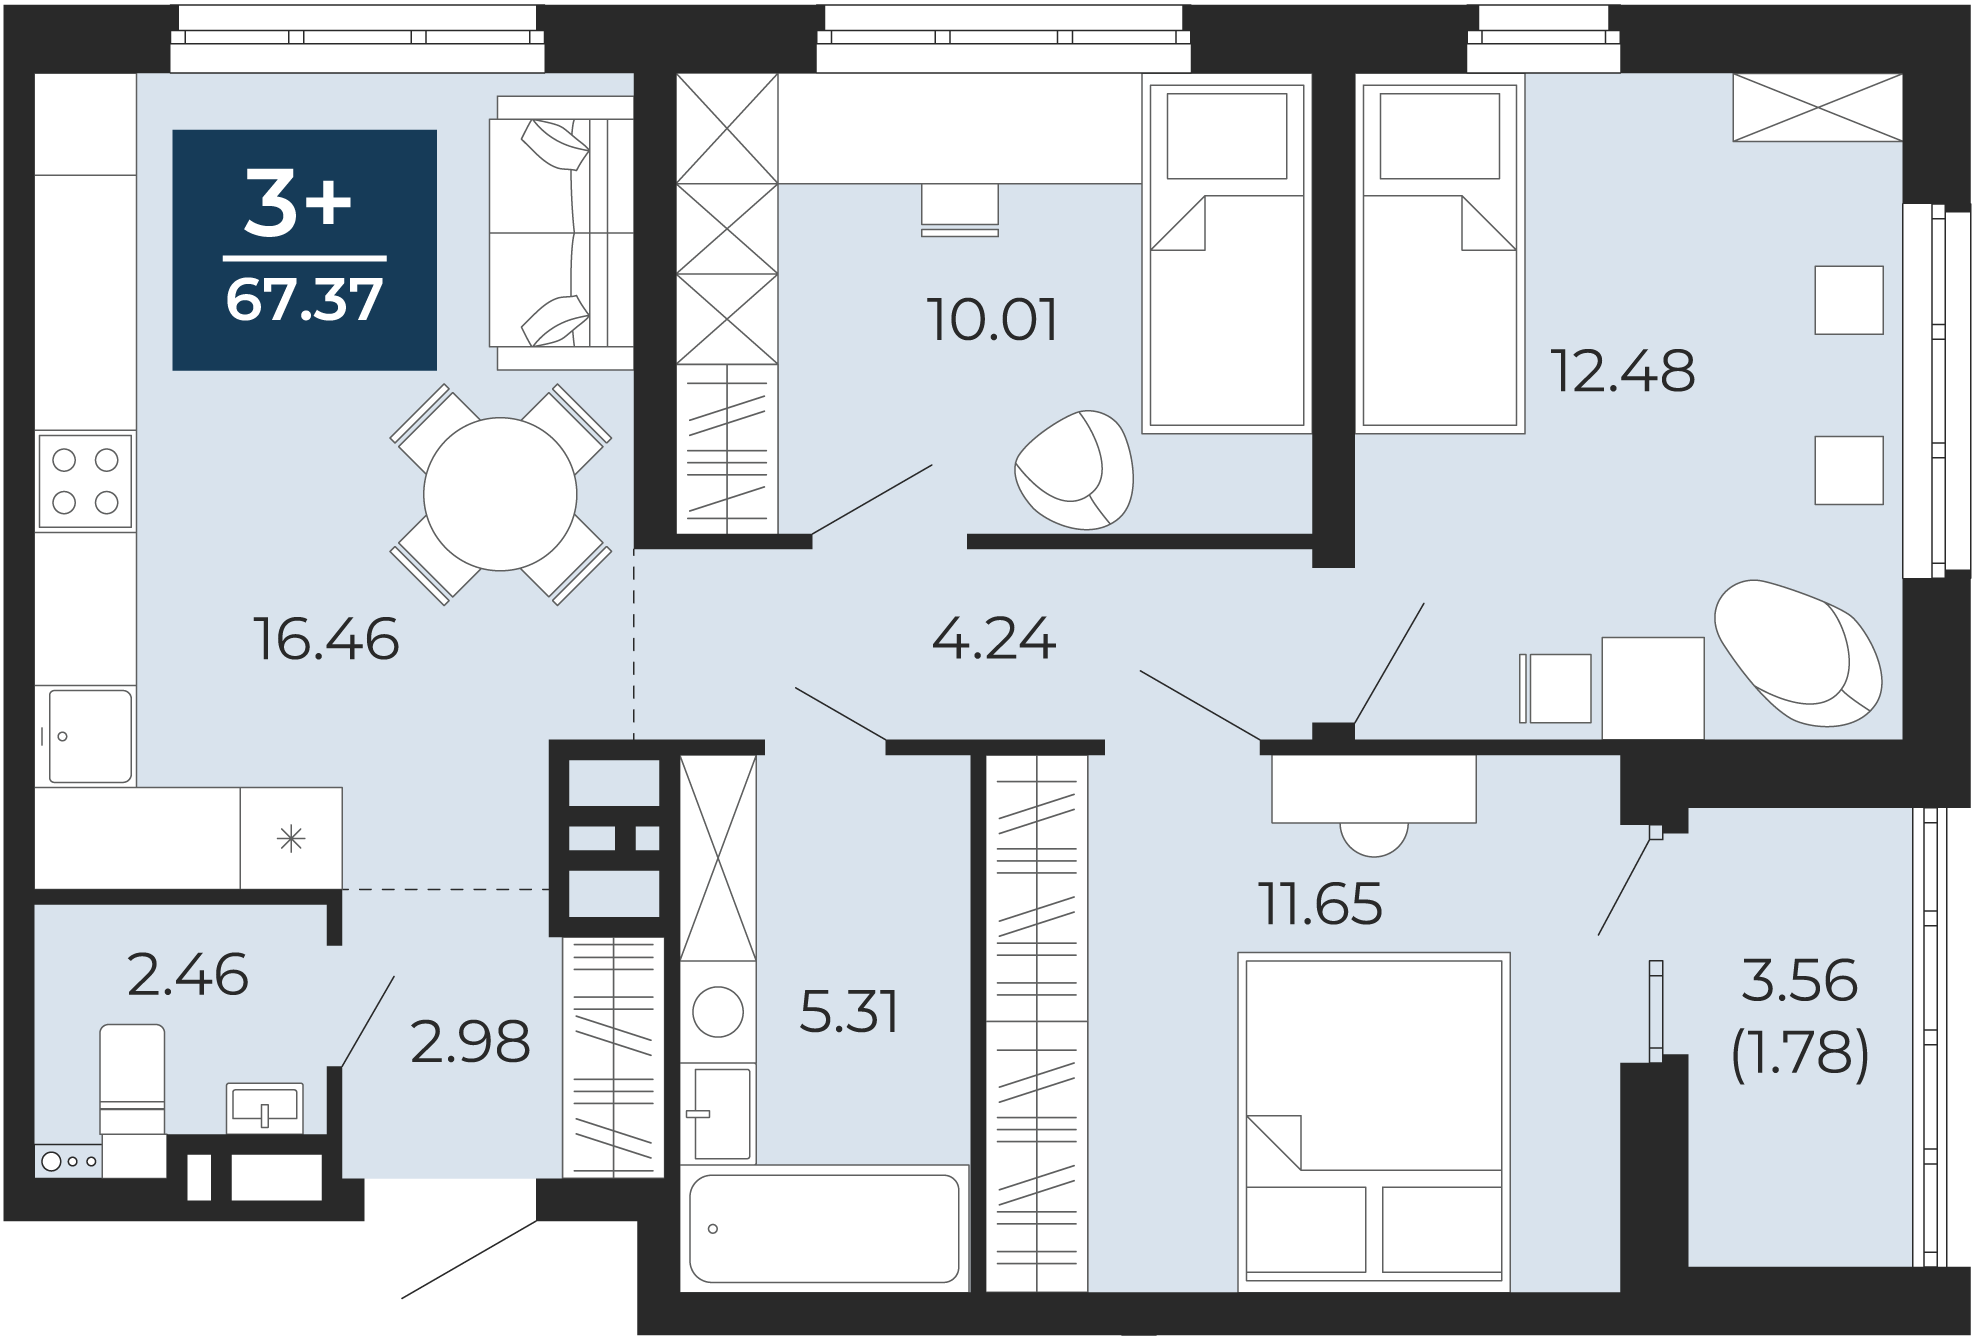 Квартира № 244, 3-комнатная, 67.37 кв. м, 7 этаж